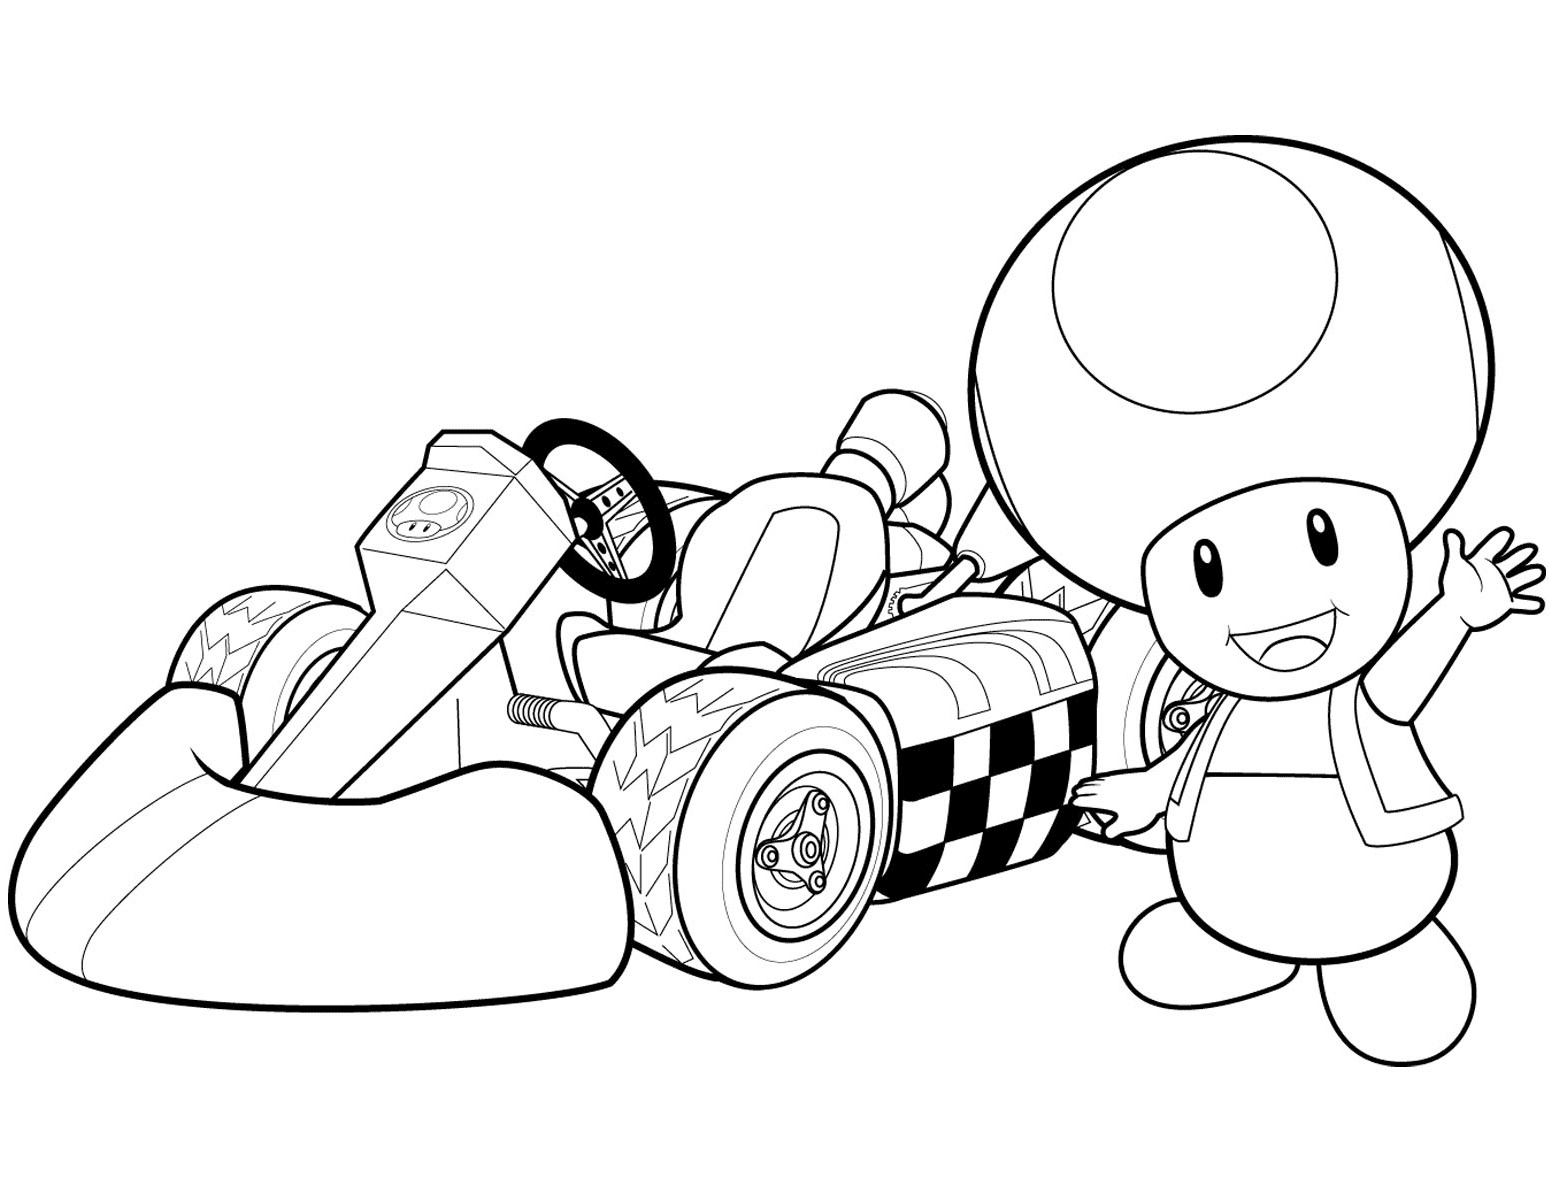 Жаба в Mario Kart для консоли Wii от Toad Mario